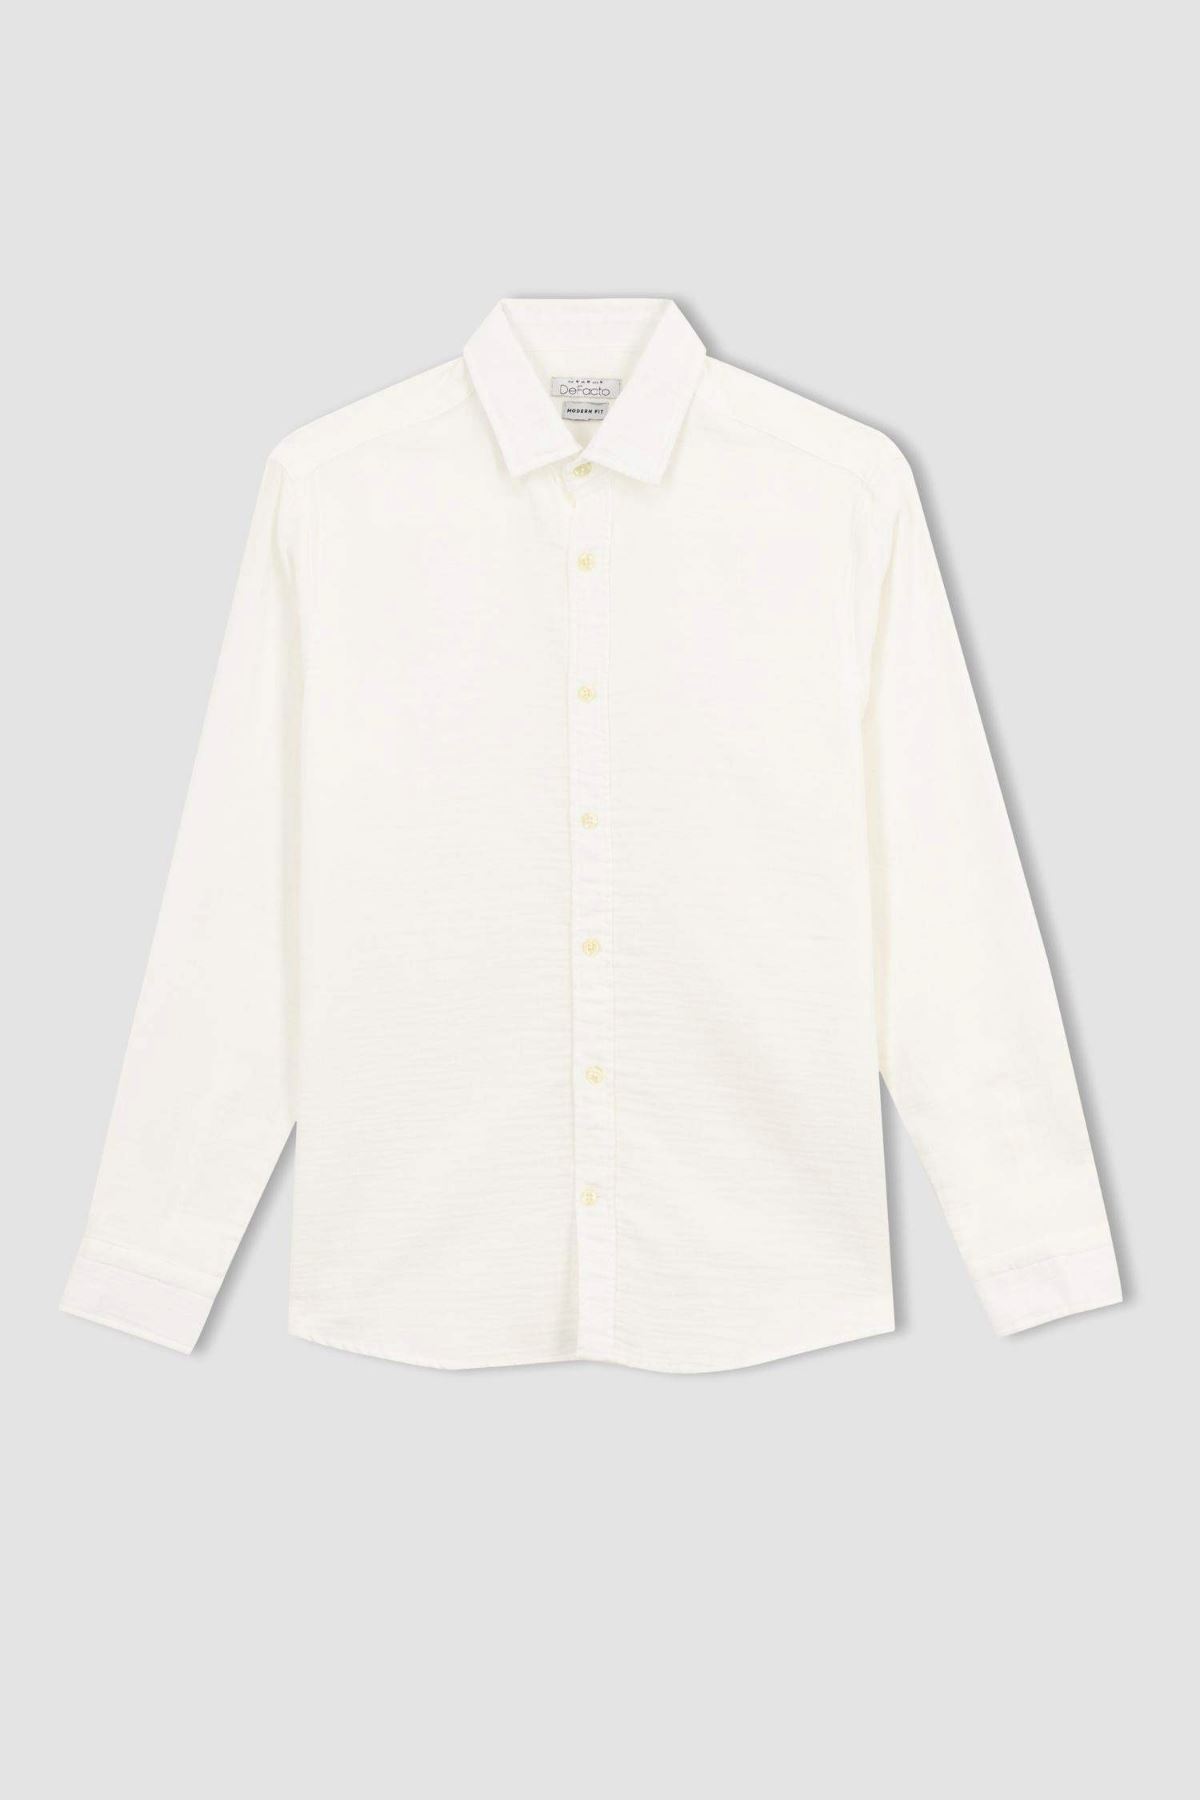 Defacto Erkek Beyaz Gömlek - W7832AZ/WT32